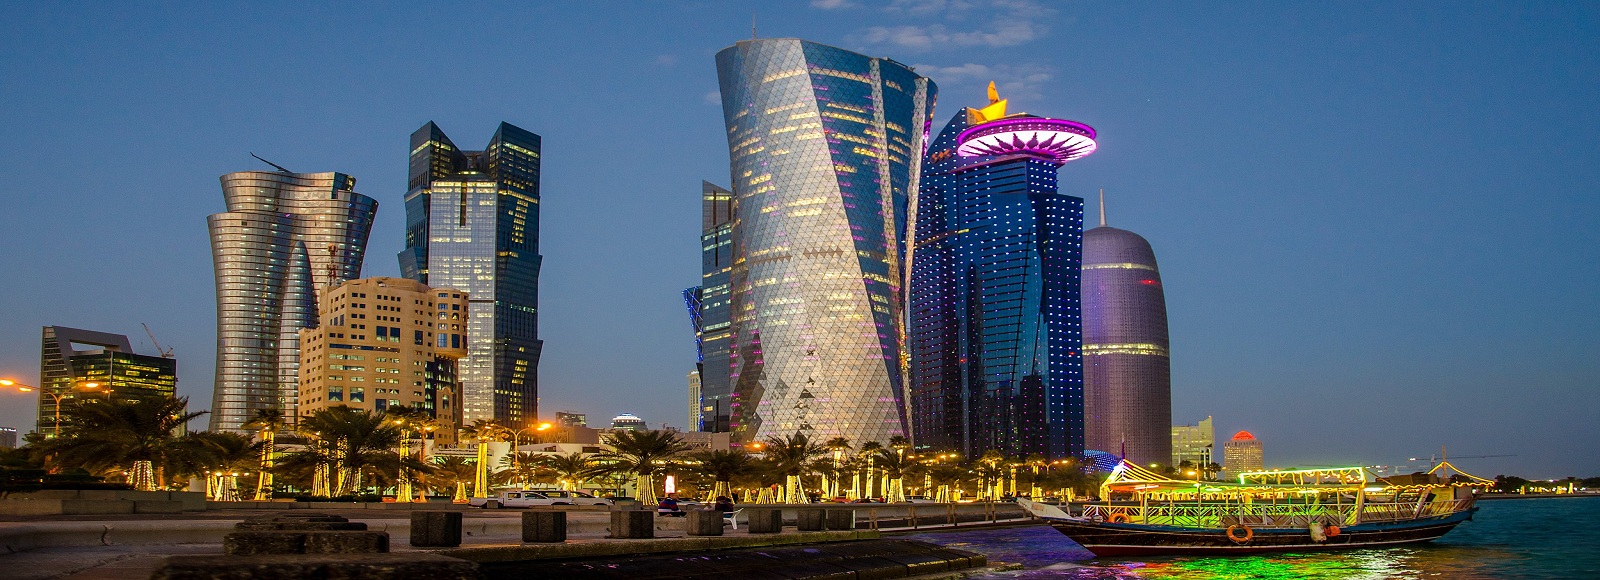 Ofertas de Traslados en Qatar. Traslados económicos en Qatar 